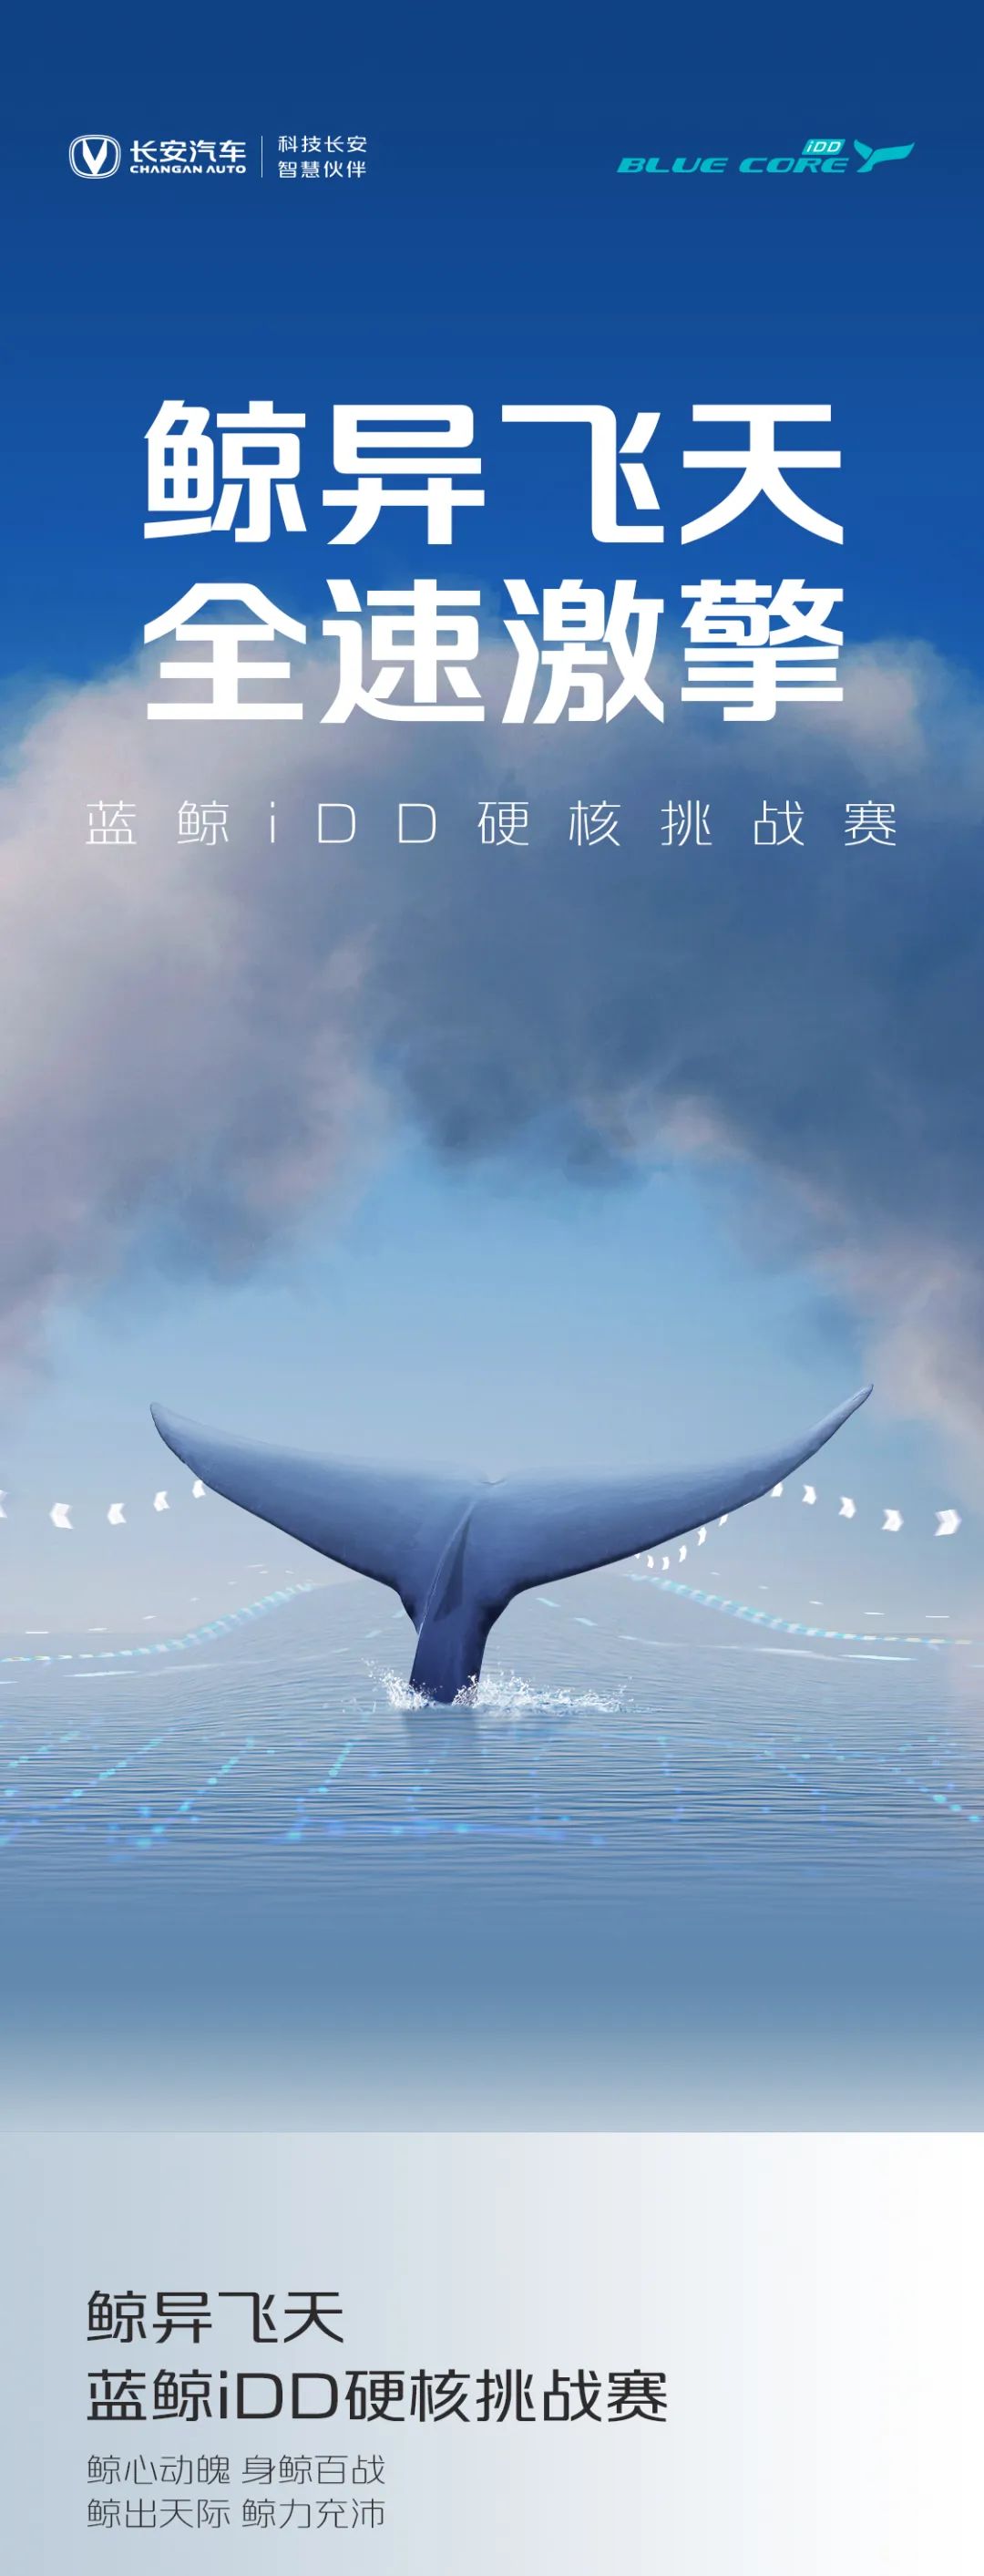 点击查看详细信息<br>标题：蓝鲸iDD硬核挑战赛丨高能无惧挑战 阅读次数：239